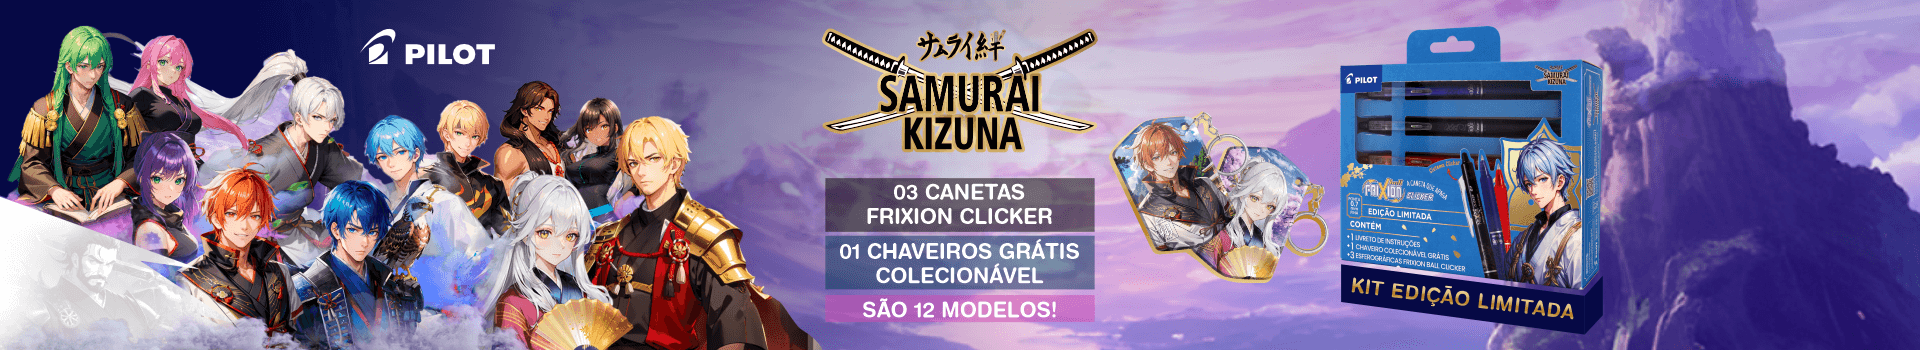 Caneta Pilot Frixion Clicker - Samurai Kizuna